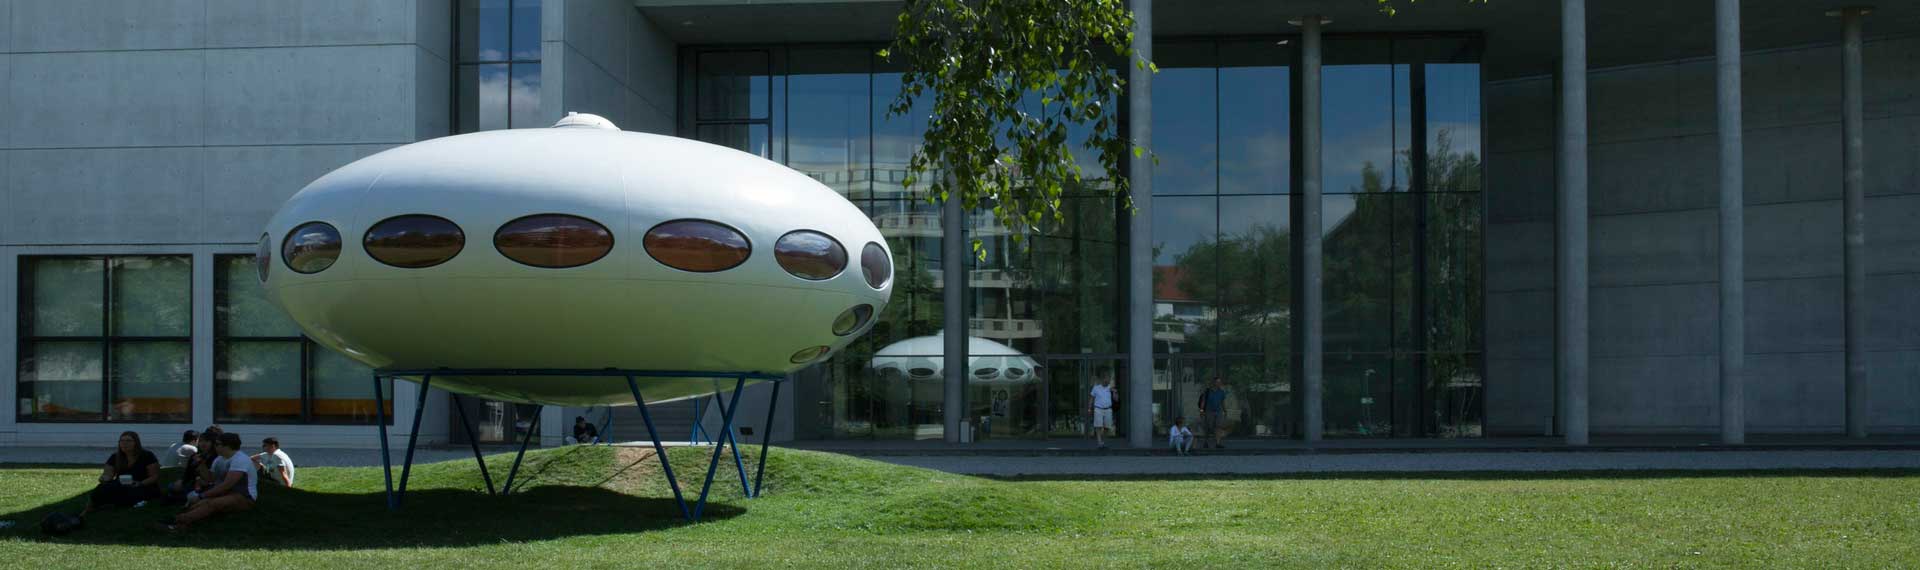 Futuro Ufo vor der Pinakothek der Moderne in München